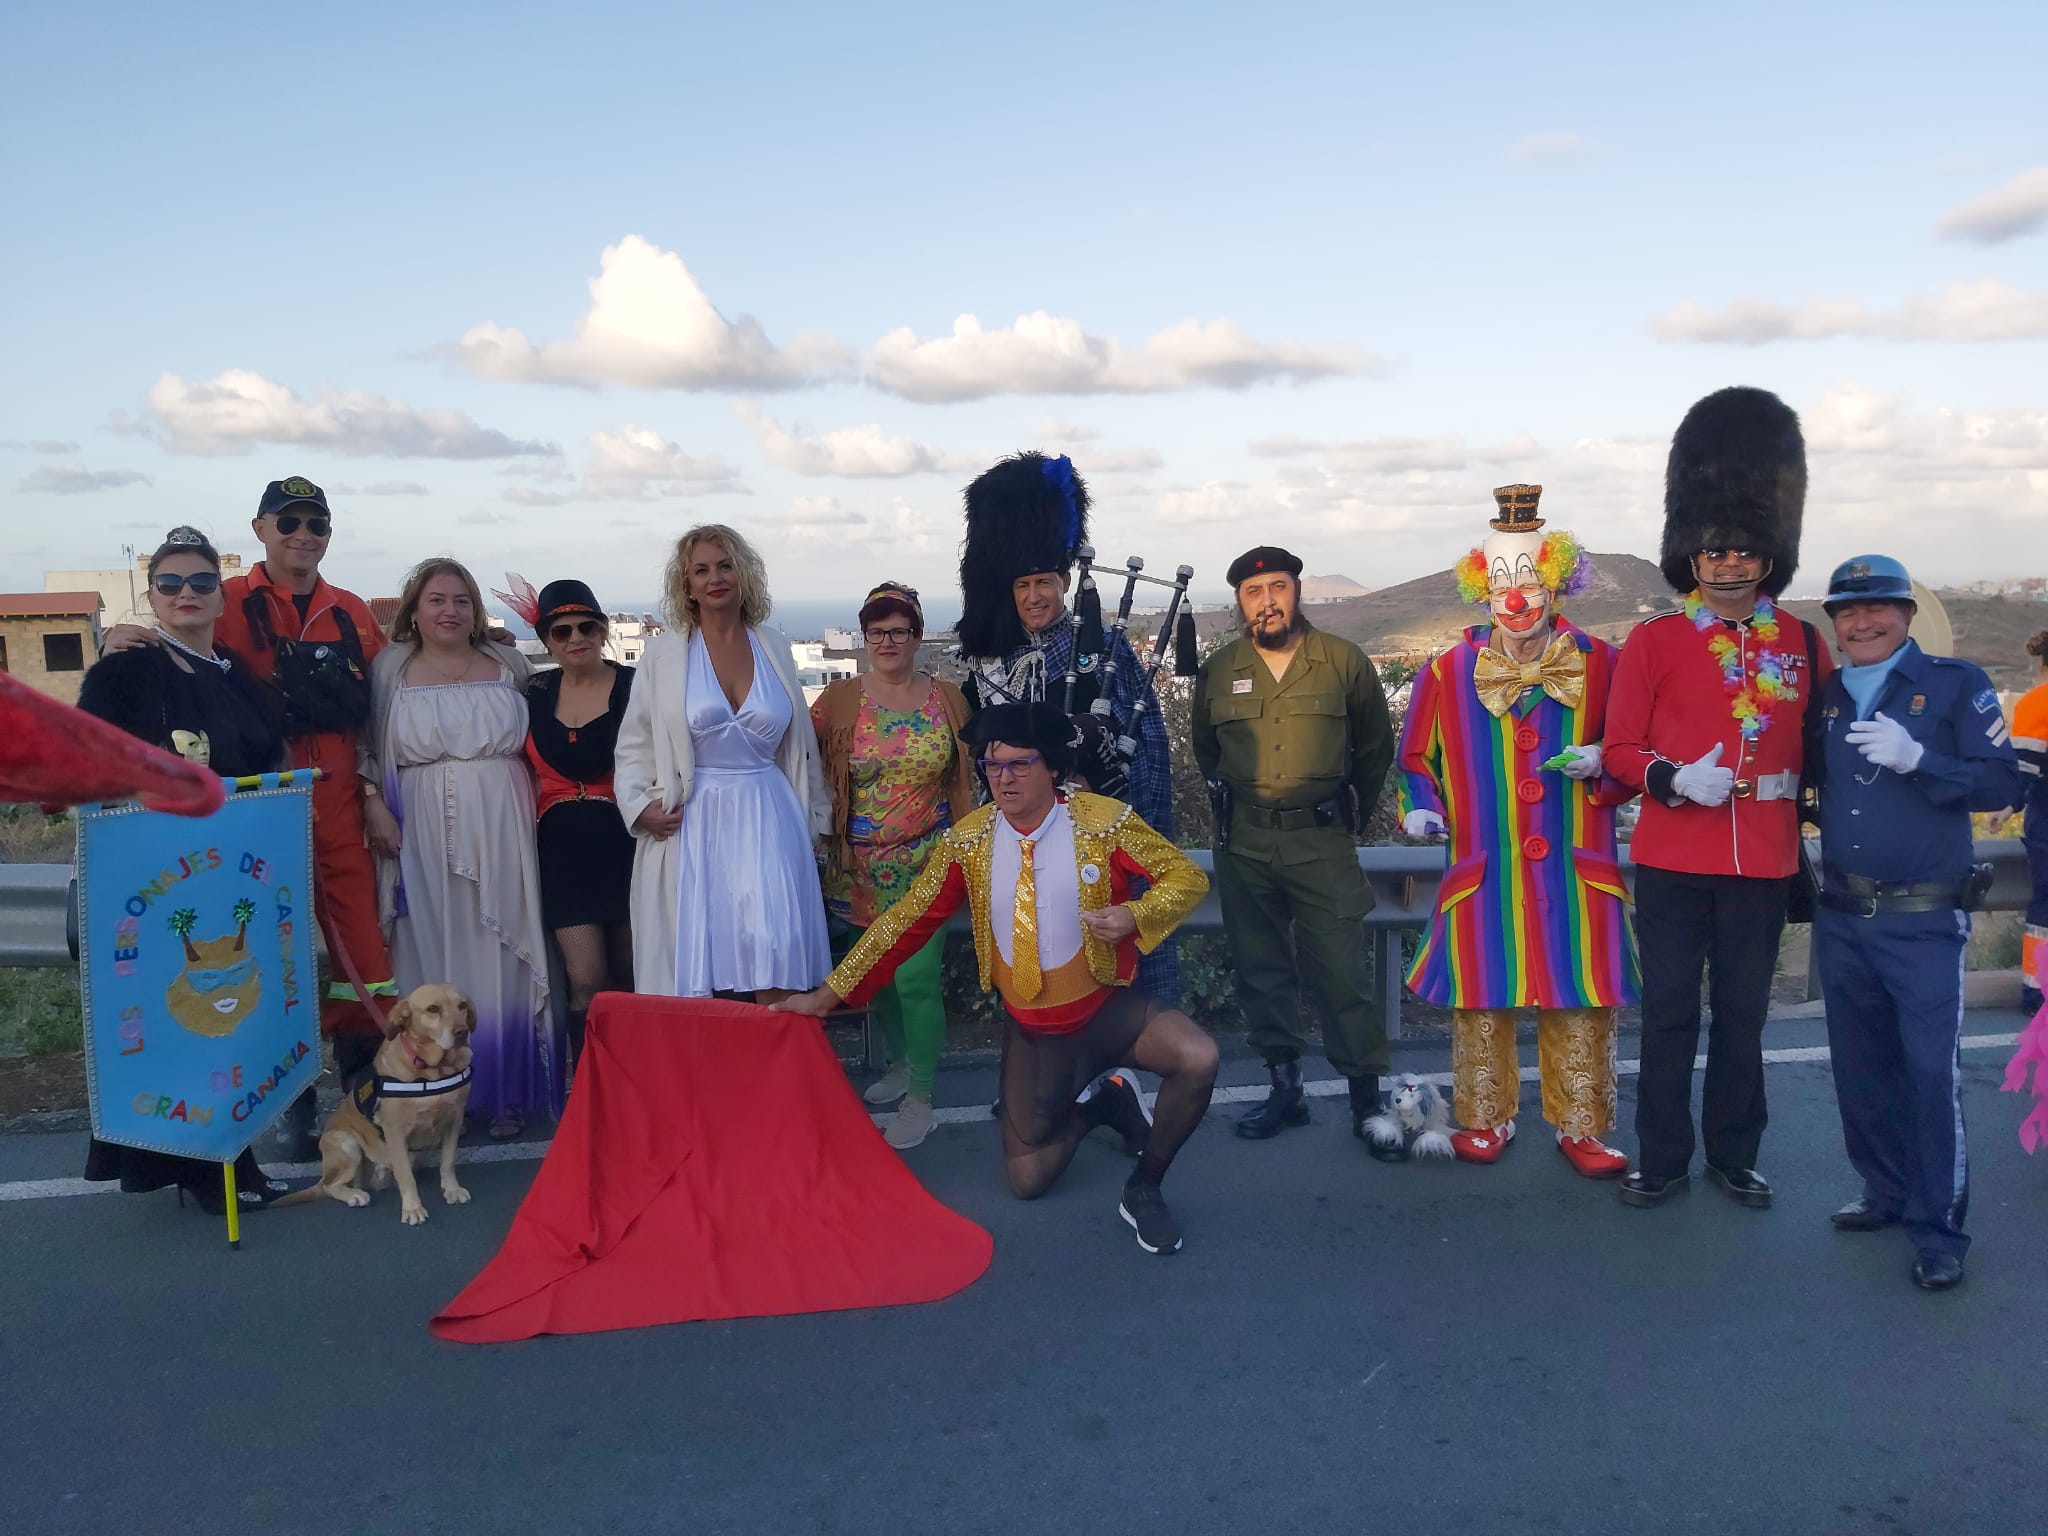 Los Personajes del Carnaval de Las Palmas en el carnaval de Cardones